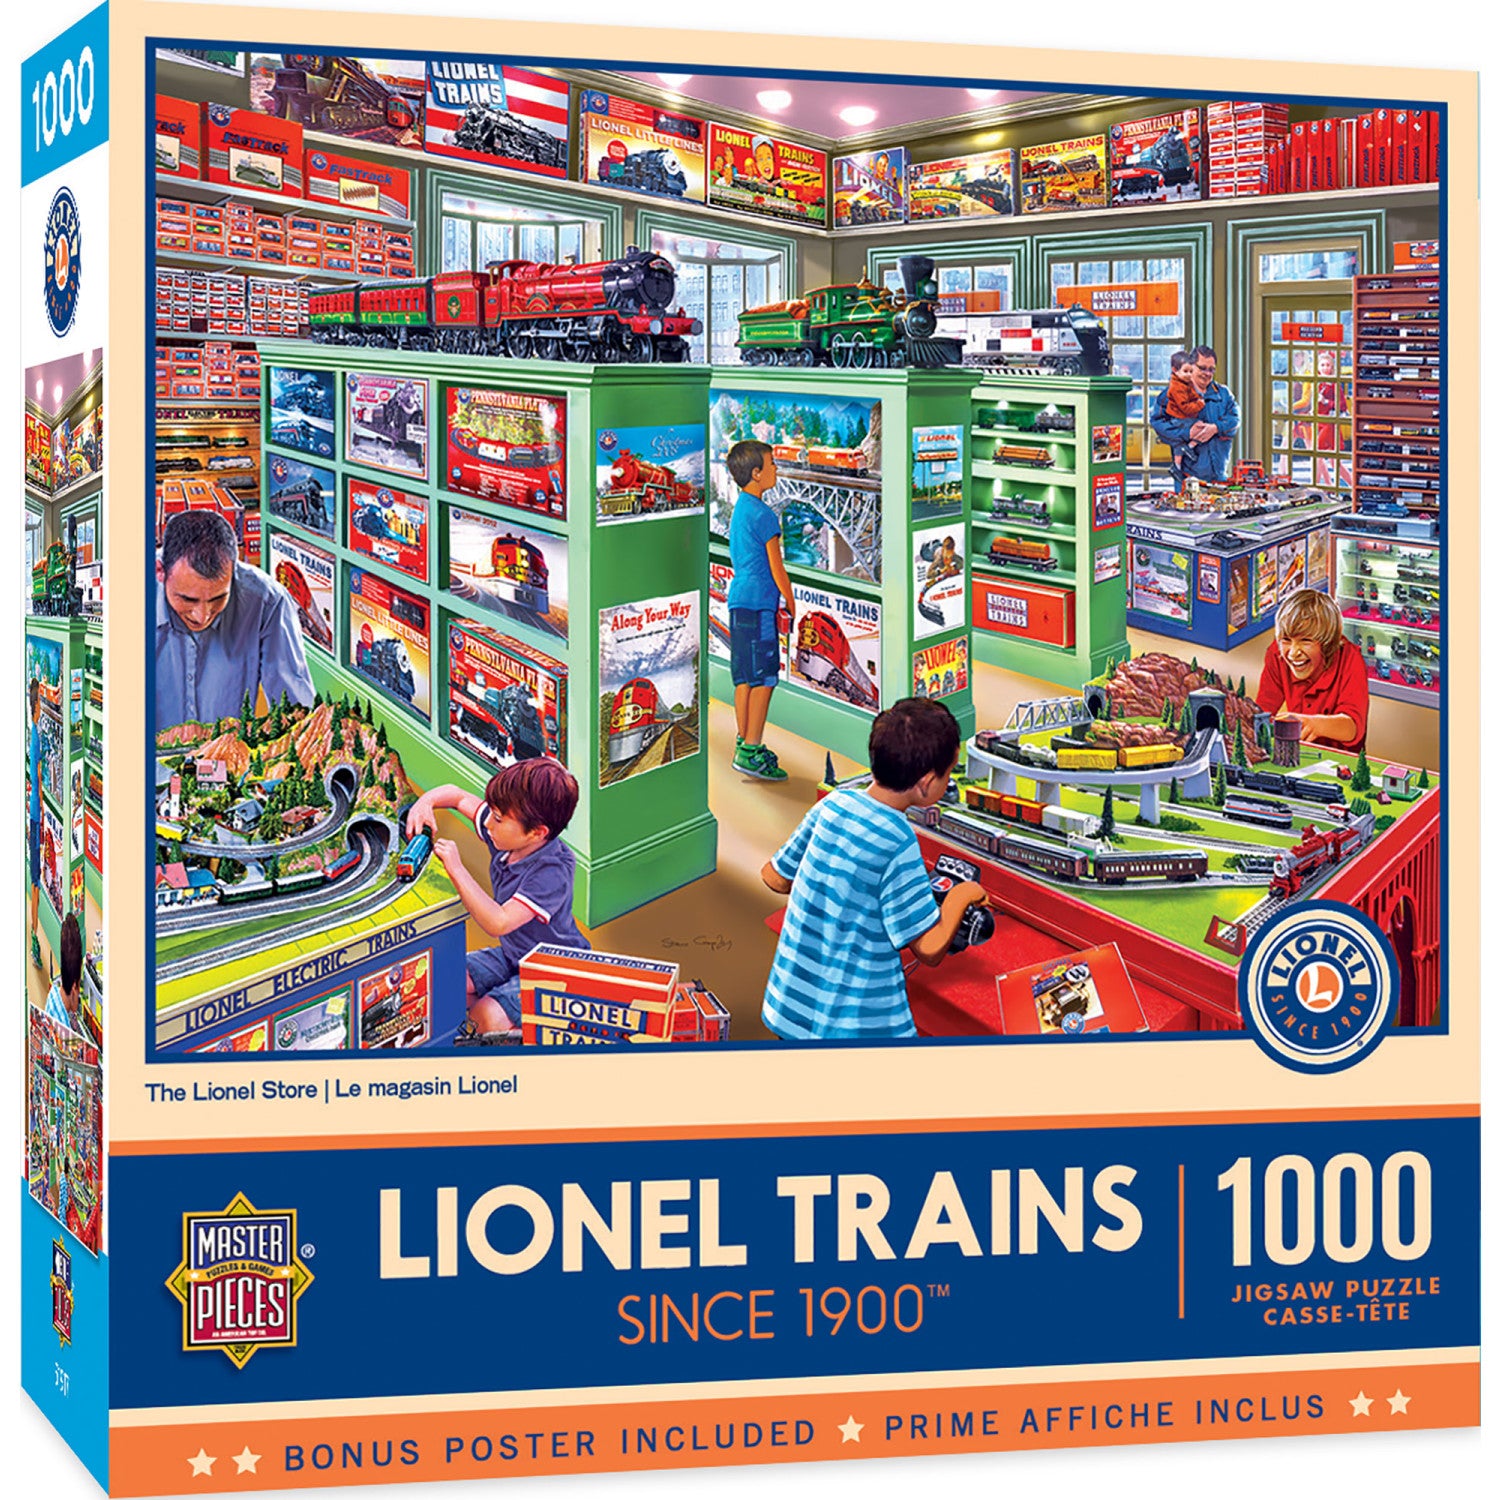 Lionel Trains - The Lionel Store 1000 Piece Jigsaw Puzzle